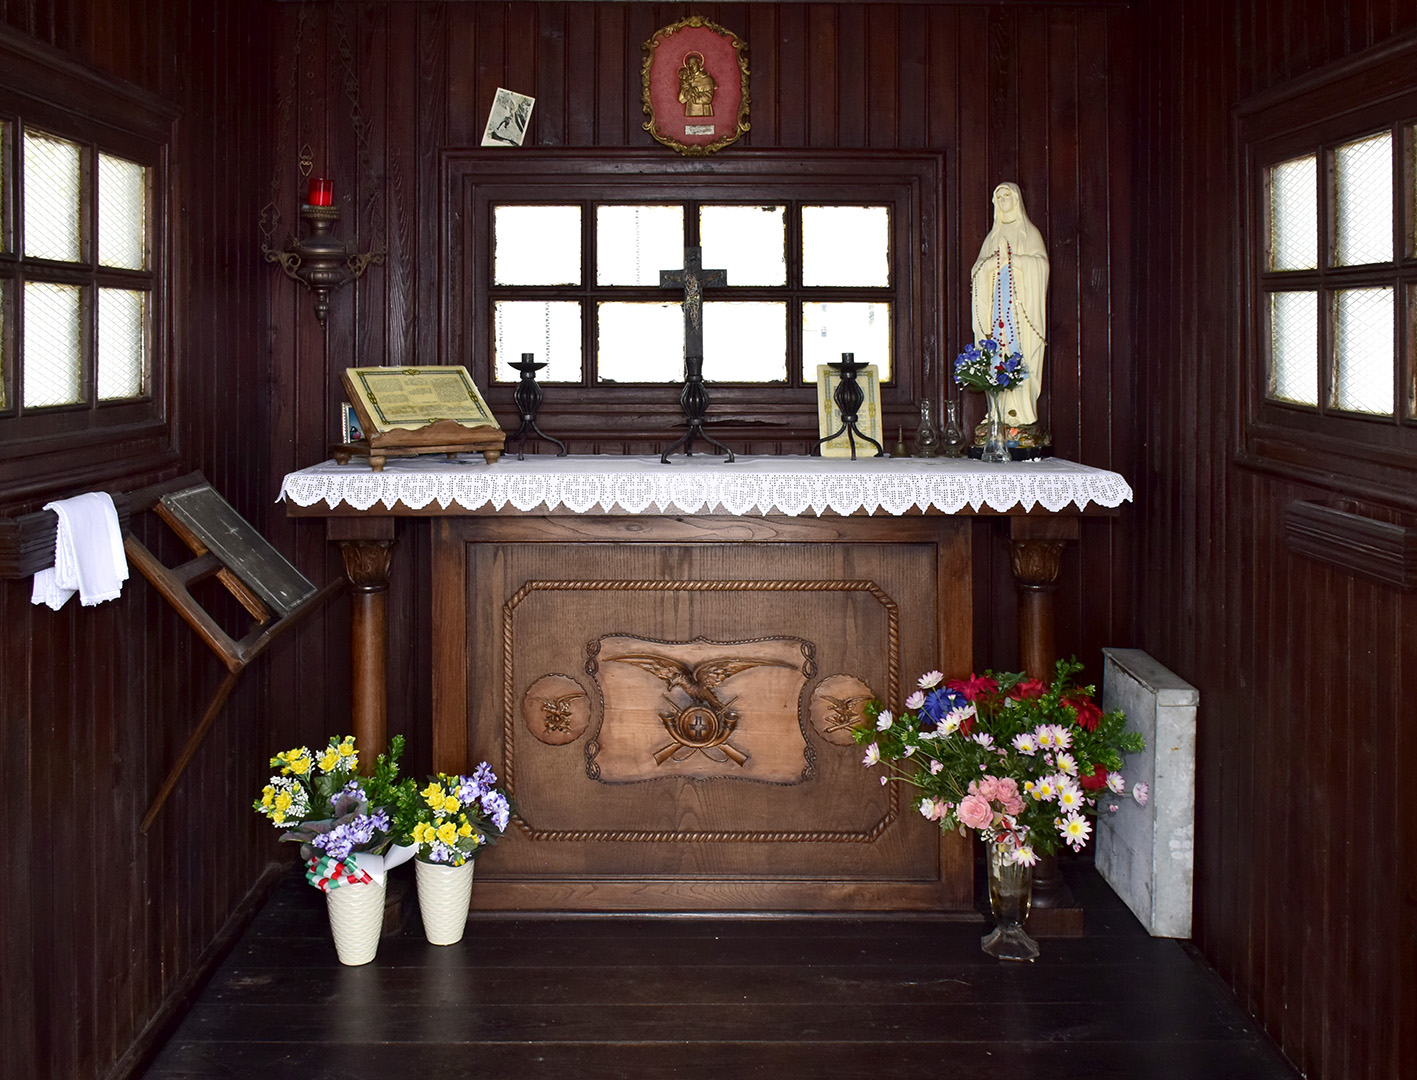 L'altare all'interno della chiesetta